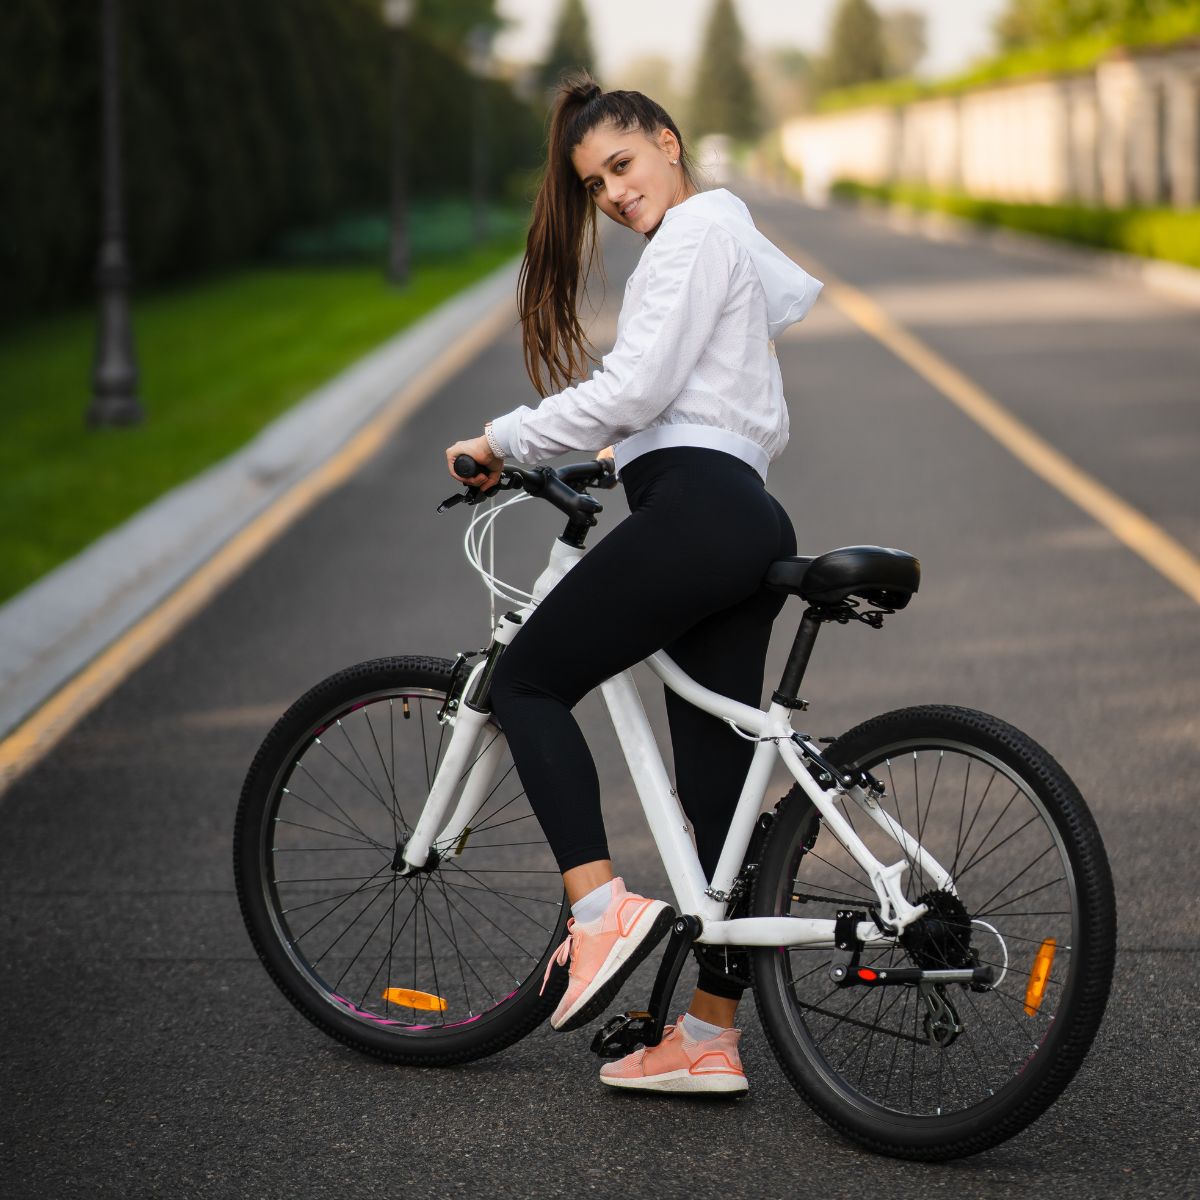 Necesitan las mujeres bicicletas específicas? – El blog de Tuvalum